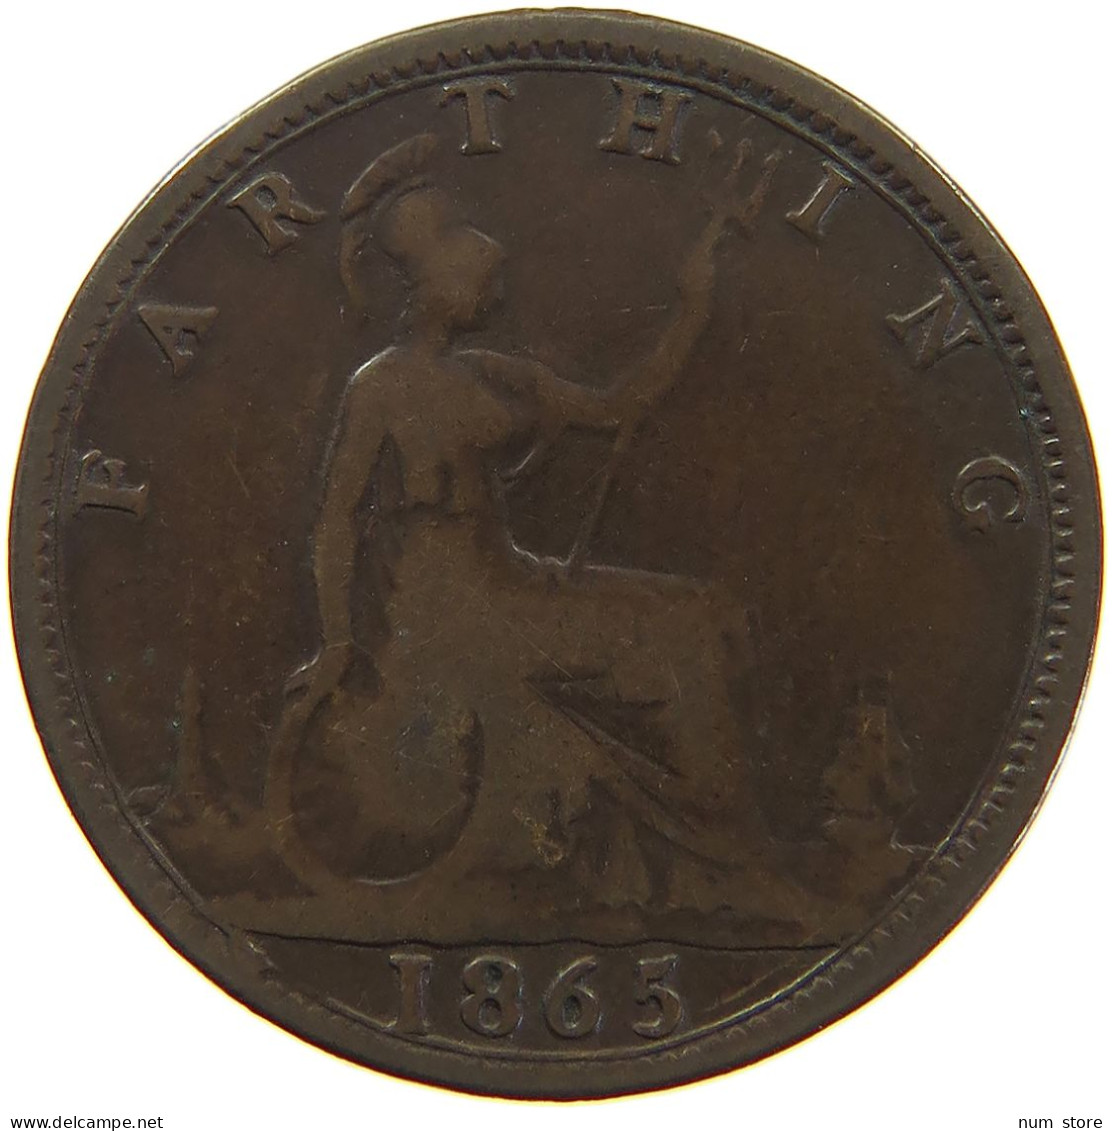 GREAT BRITAIN FARTHING 1865 Victoria 1837-1901 #c064 0105 - B. 1 Farthing